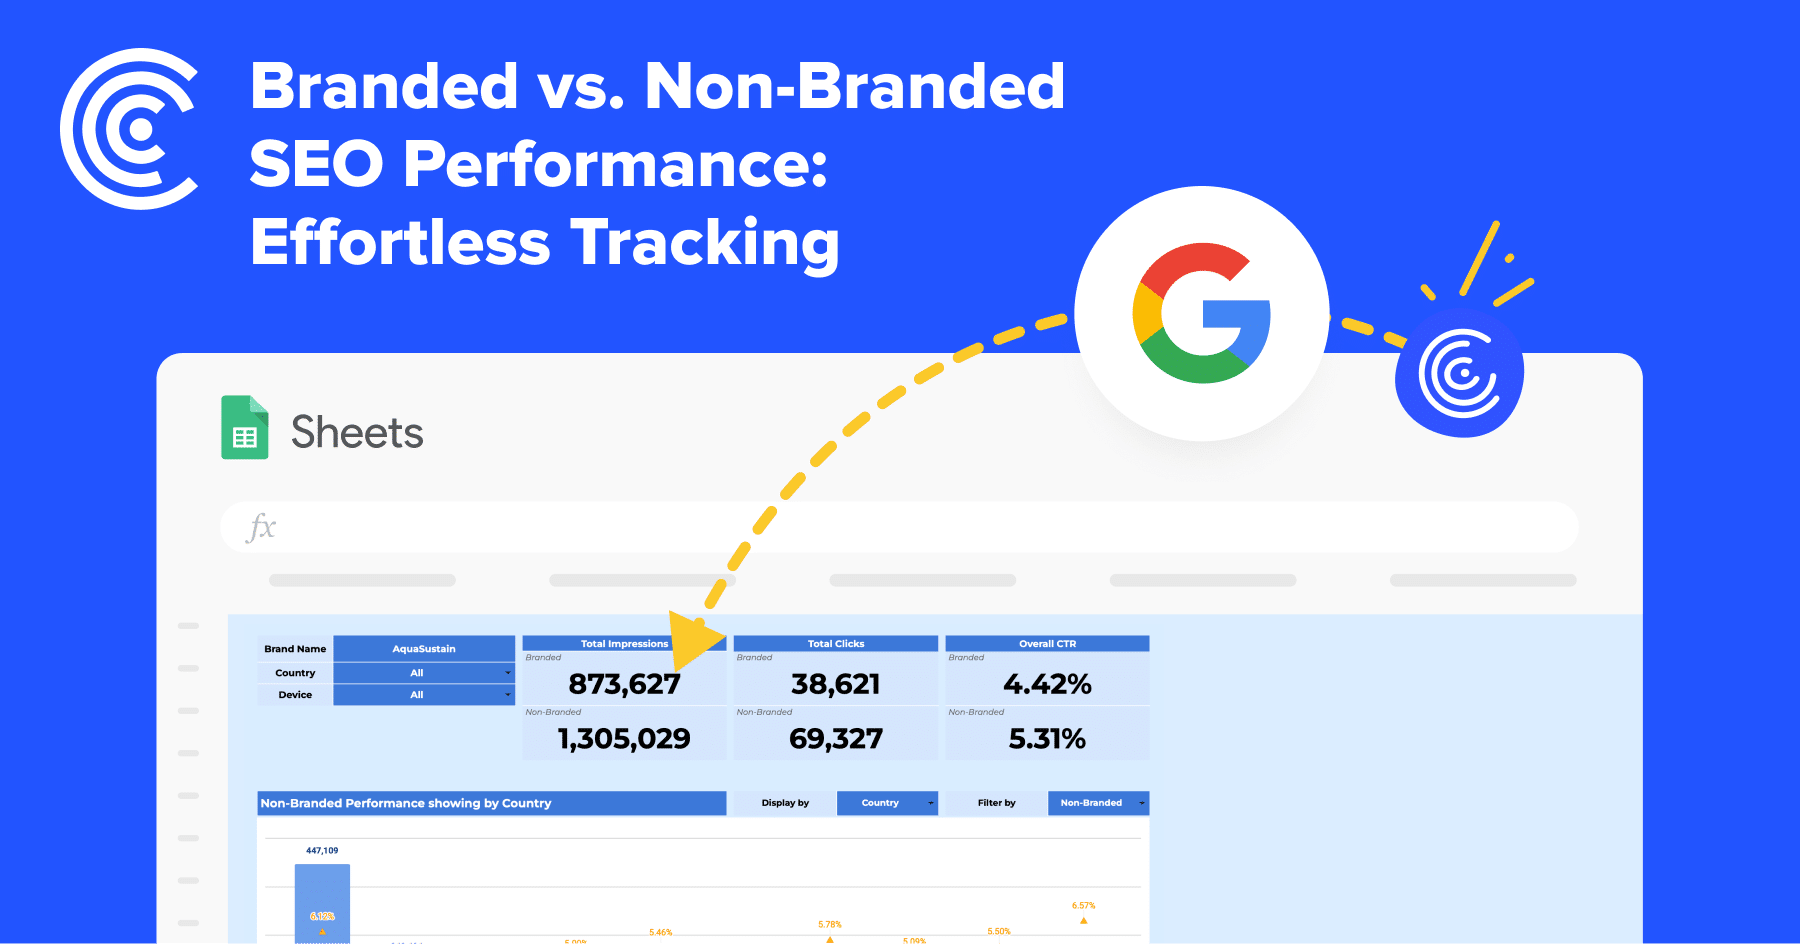 Branded vs Non-Branded Performance Report